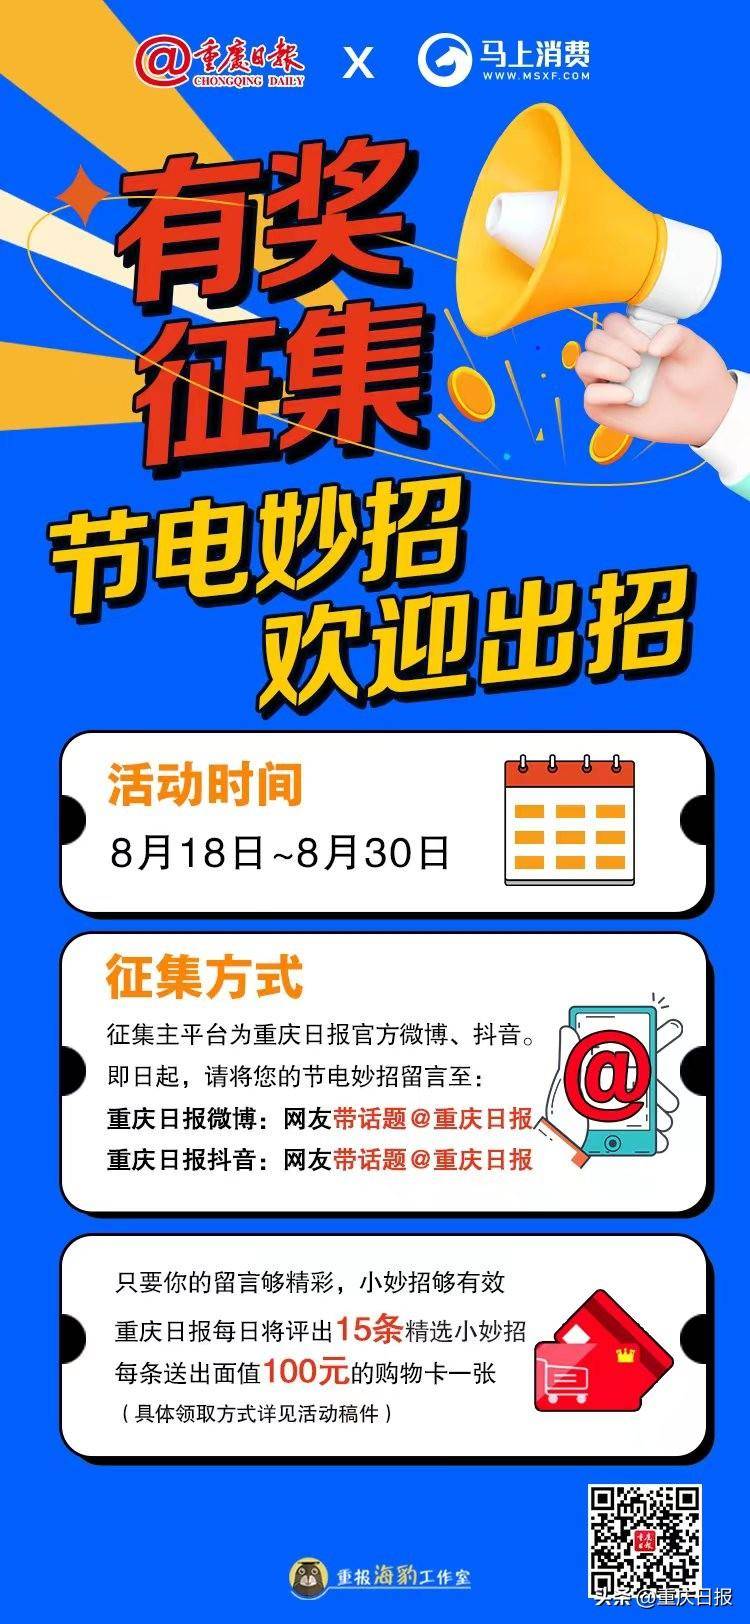 重慶日報的微博，節能行動我蓡與！攜手馬上消費，有獎征集“全民節電金點子”